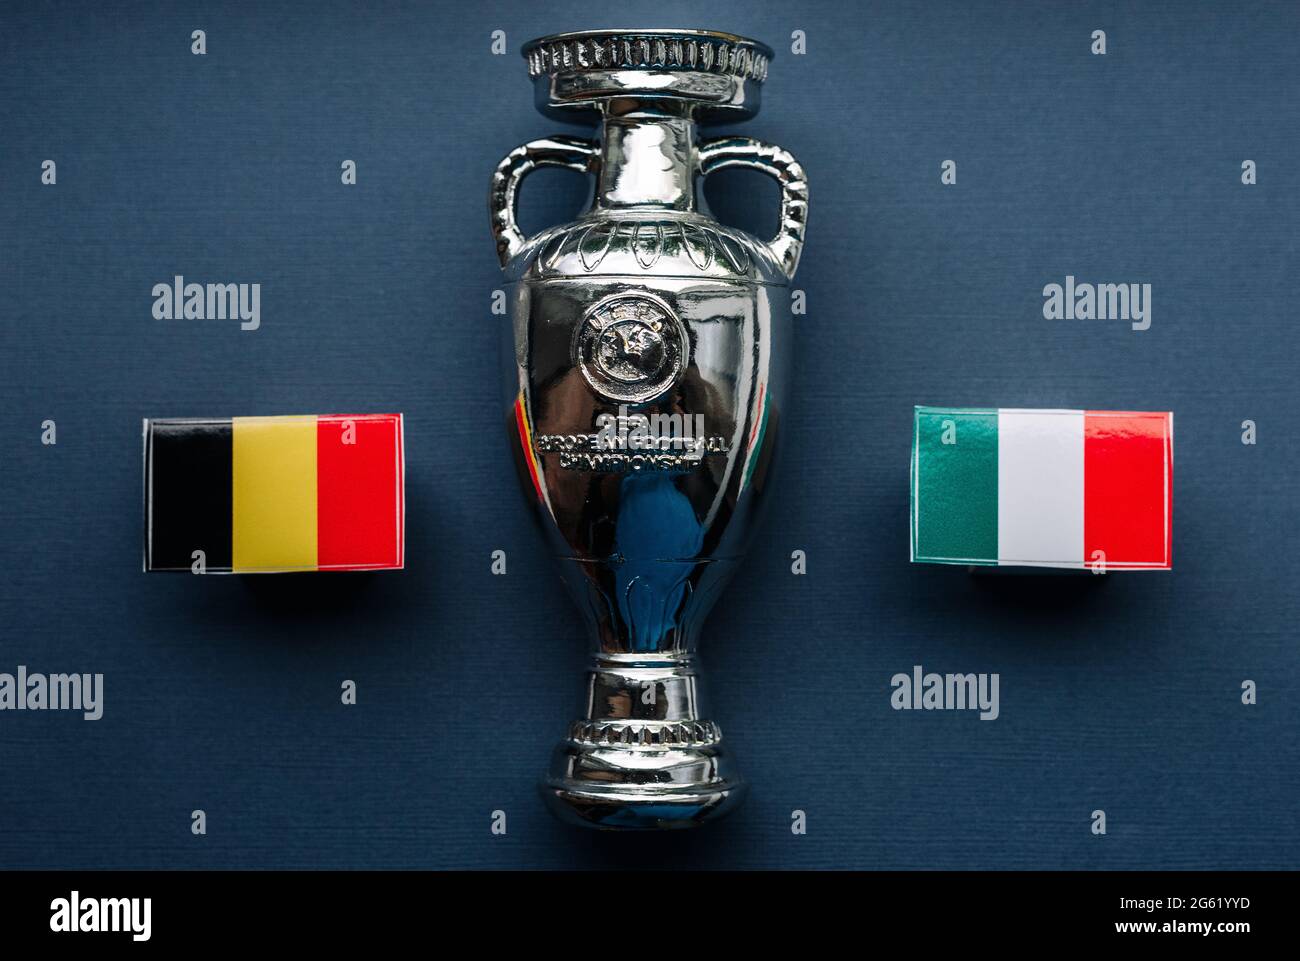 1 de julio de 2021 Munich, Alemania Bandera de los cuartos de final del Campeonato Europeo de Fútbol Bélgica e Italia con el telón de fondo de la Eurocopa 2020. Foto de stock